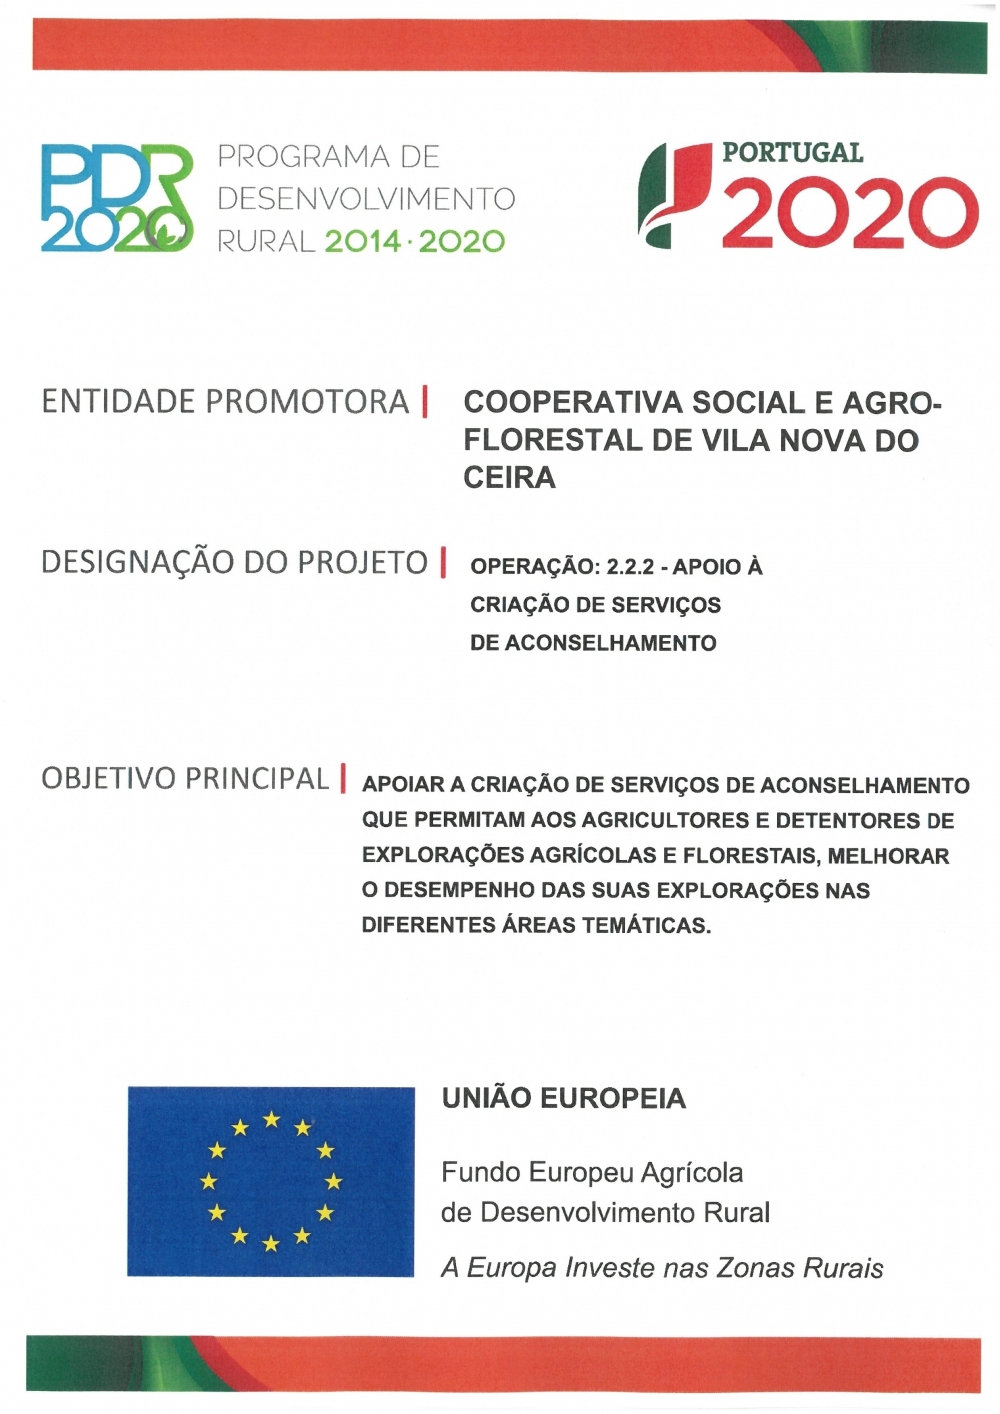 PDR 2020 | Programa de Desenvolvimento Rural 2014-2020 - www.coopvnc.pt